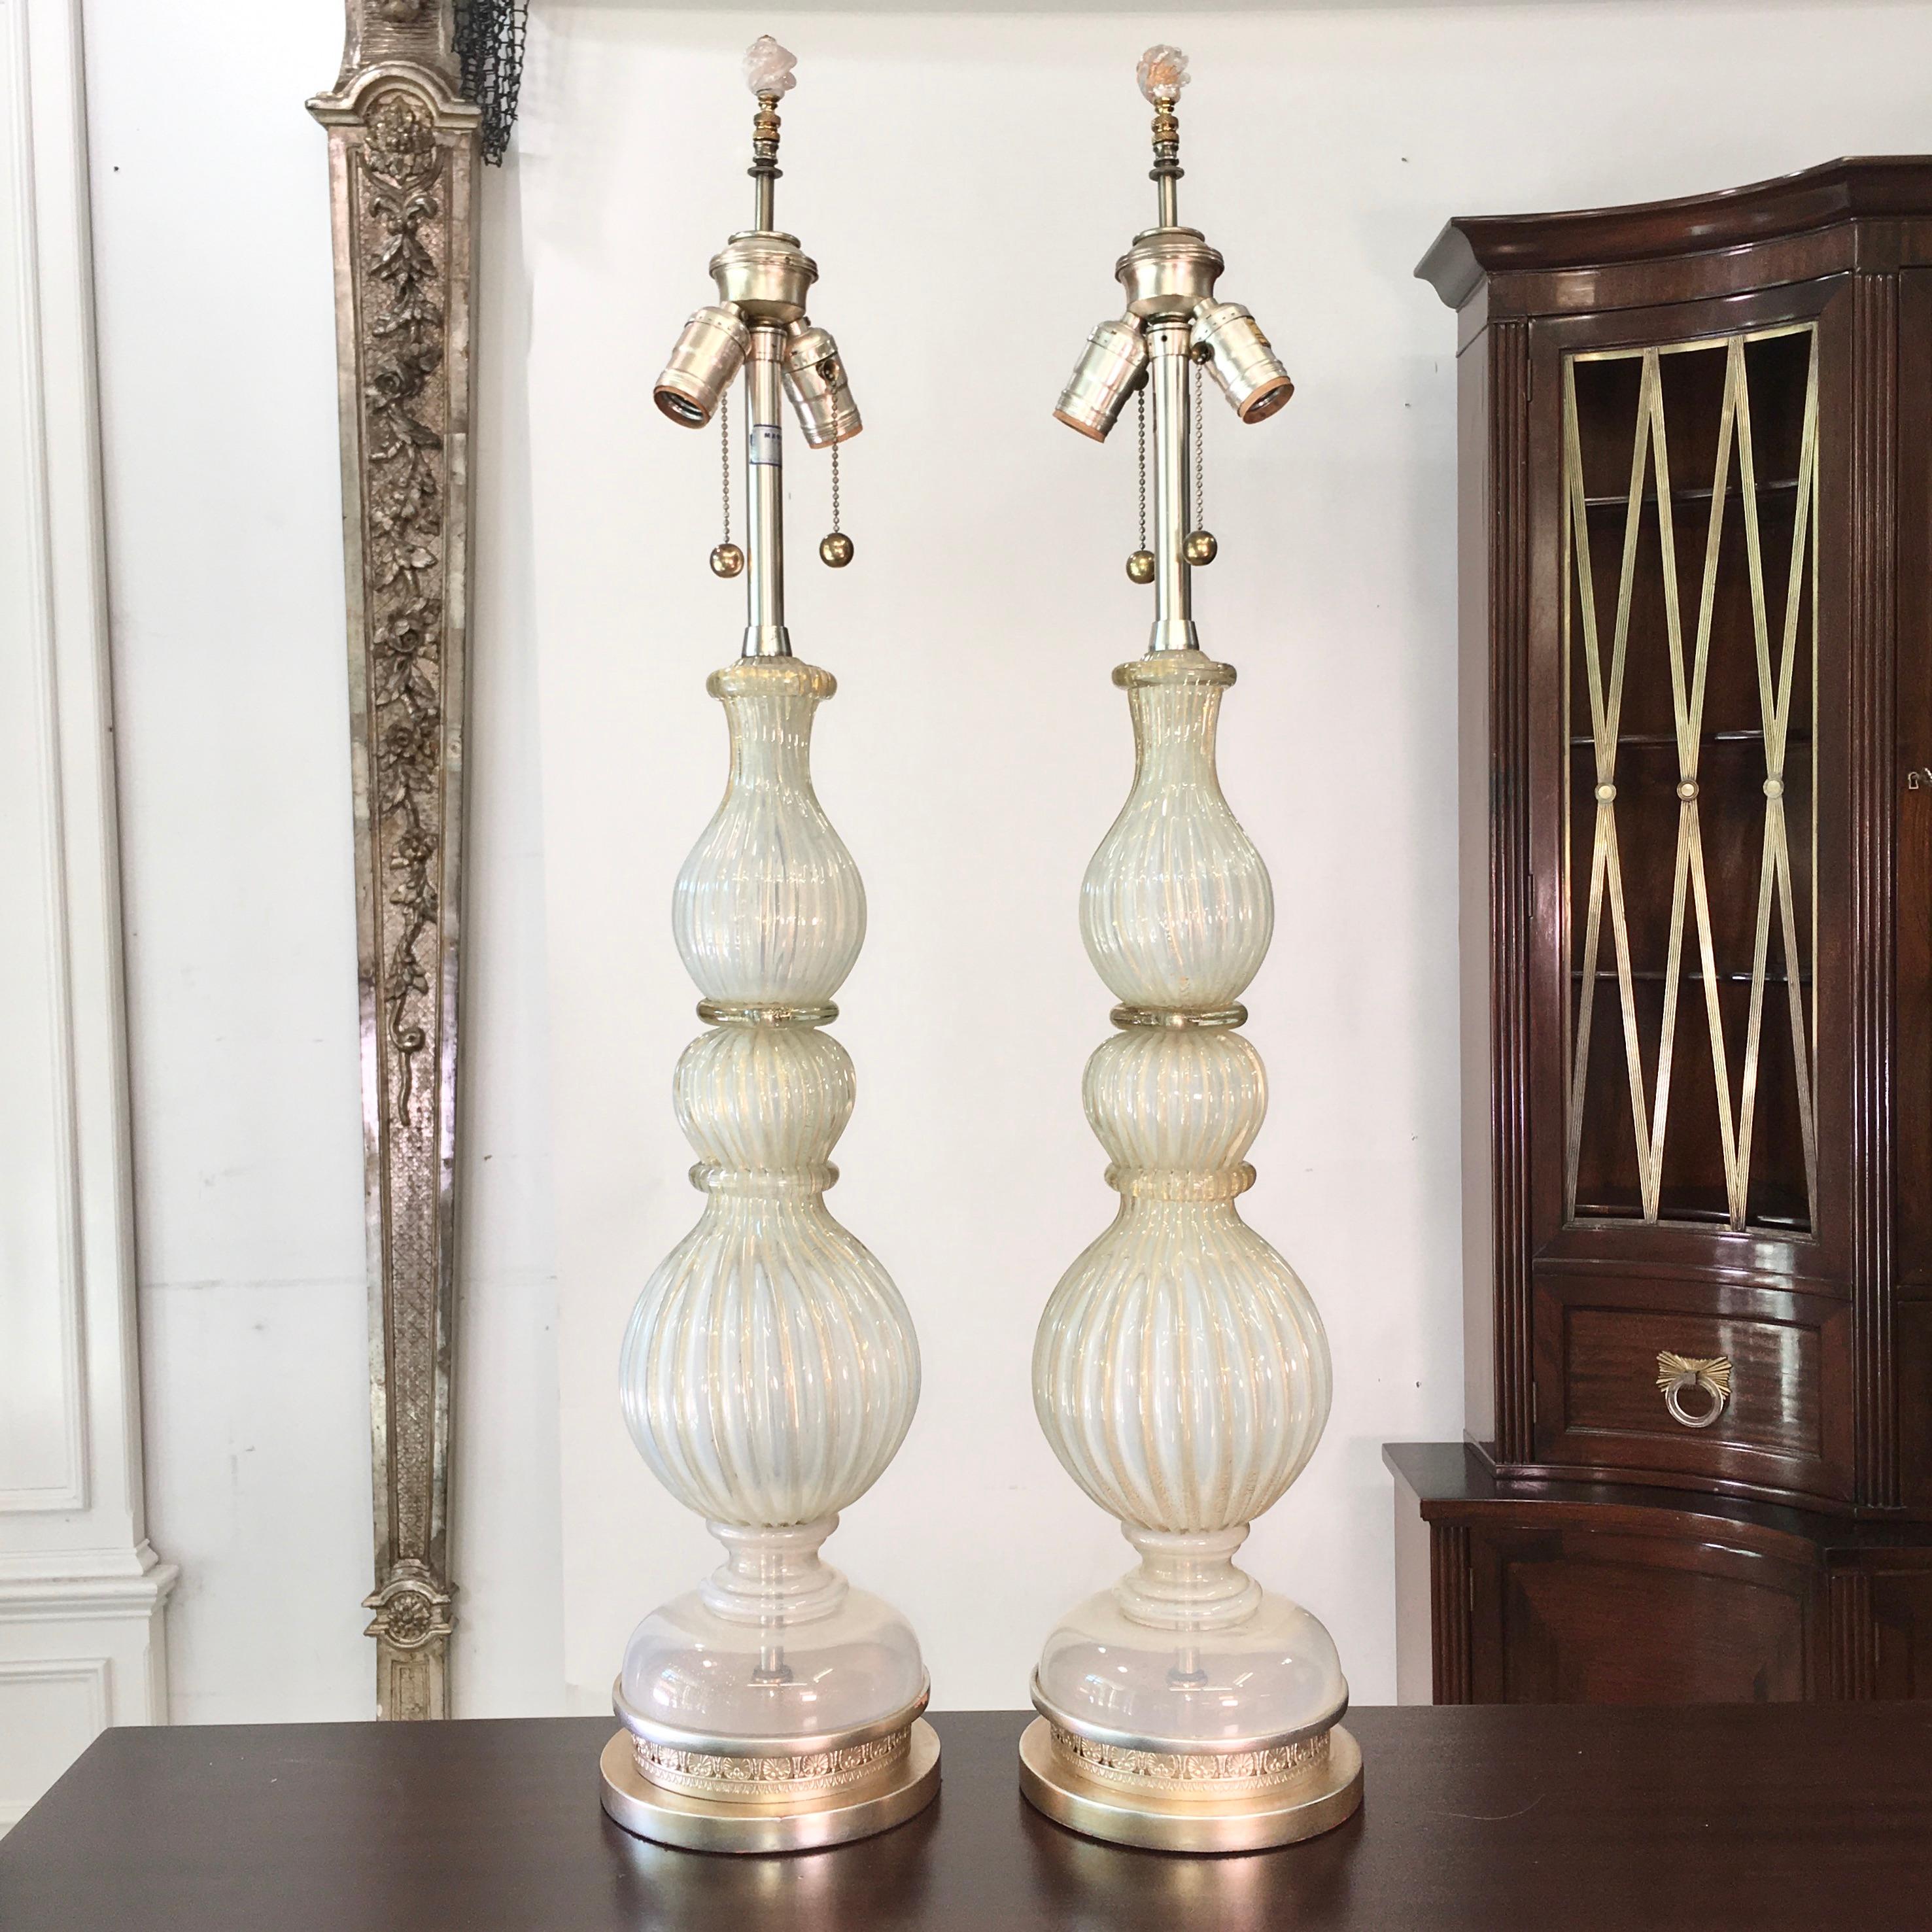 Ein Paar originaler Tischlampen aus Muranoglas von Archimede Seguso, importiert von The Marbro Lamp Co. um 1960. Beide Lampen sind signiert. 
Geripptes, opalisierendes, silberweißes Glas mit goldenen Flecken. Die Basen wurden mit Blattgold